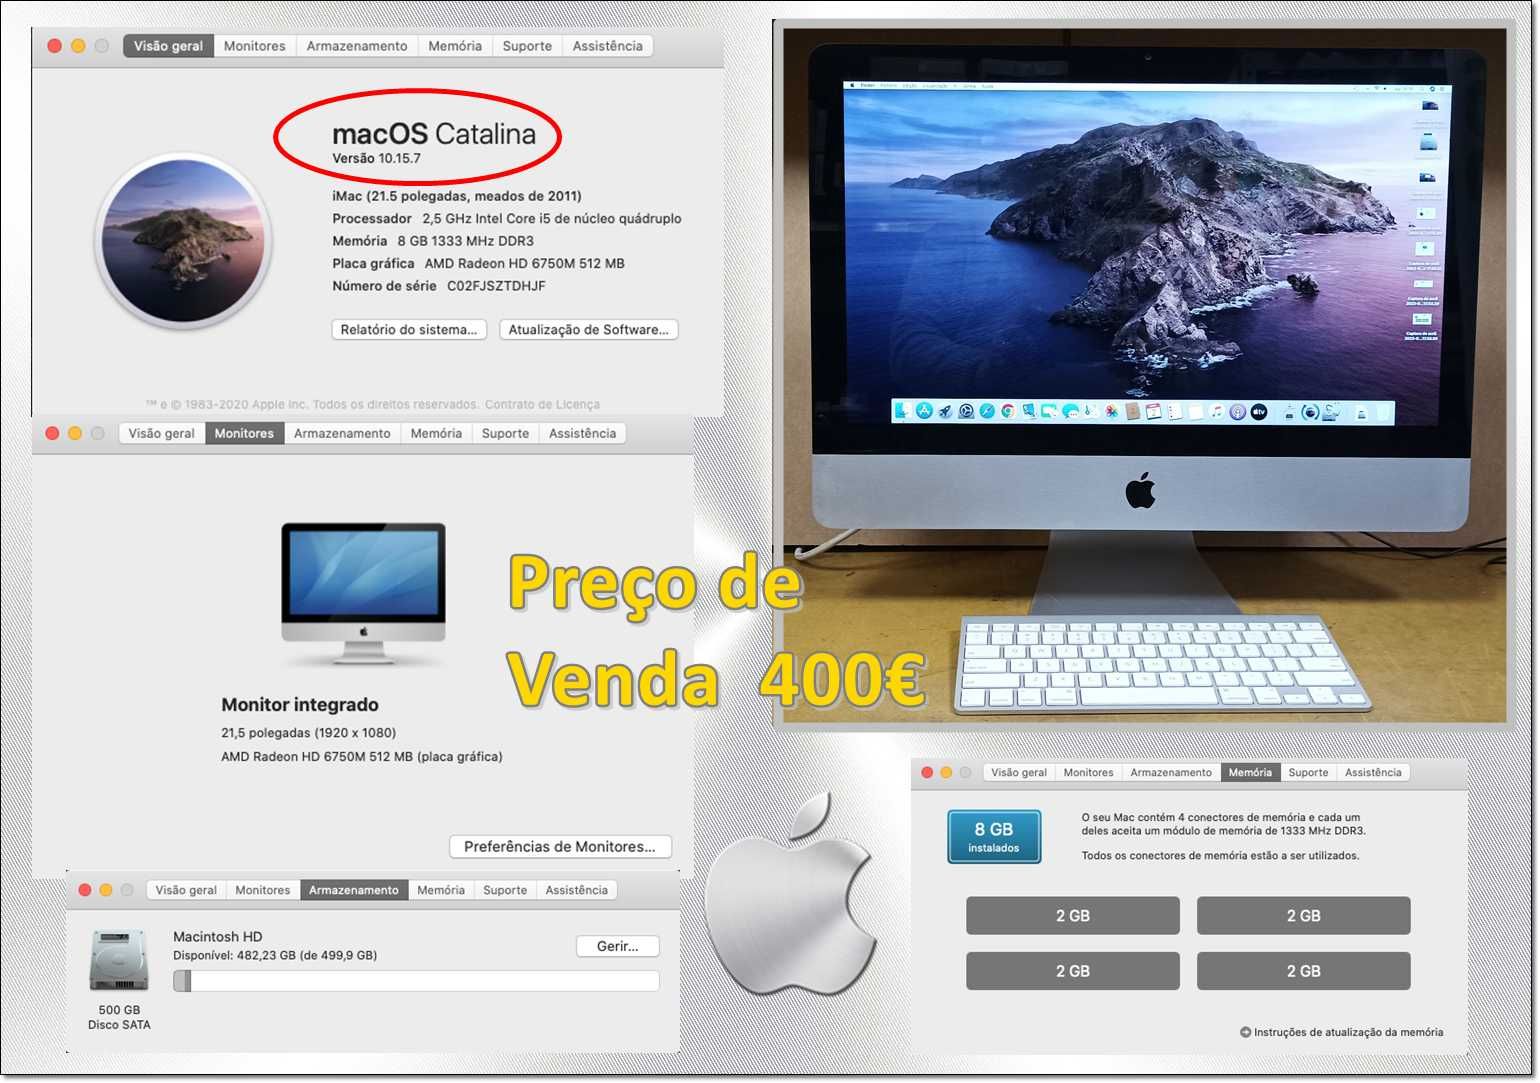 iMac 21.5" meados de 2011 com OS Catalina